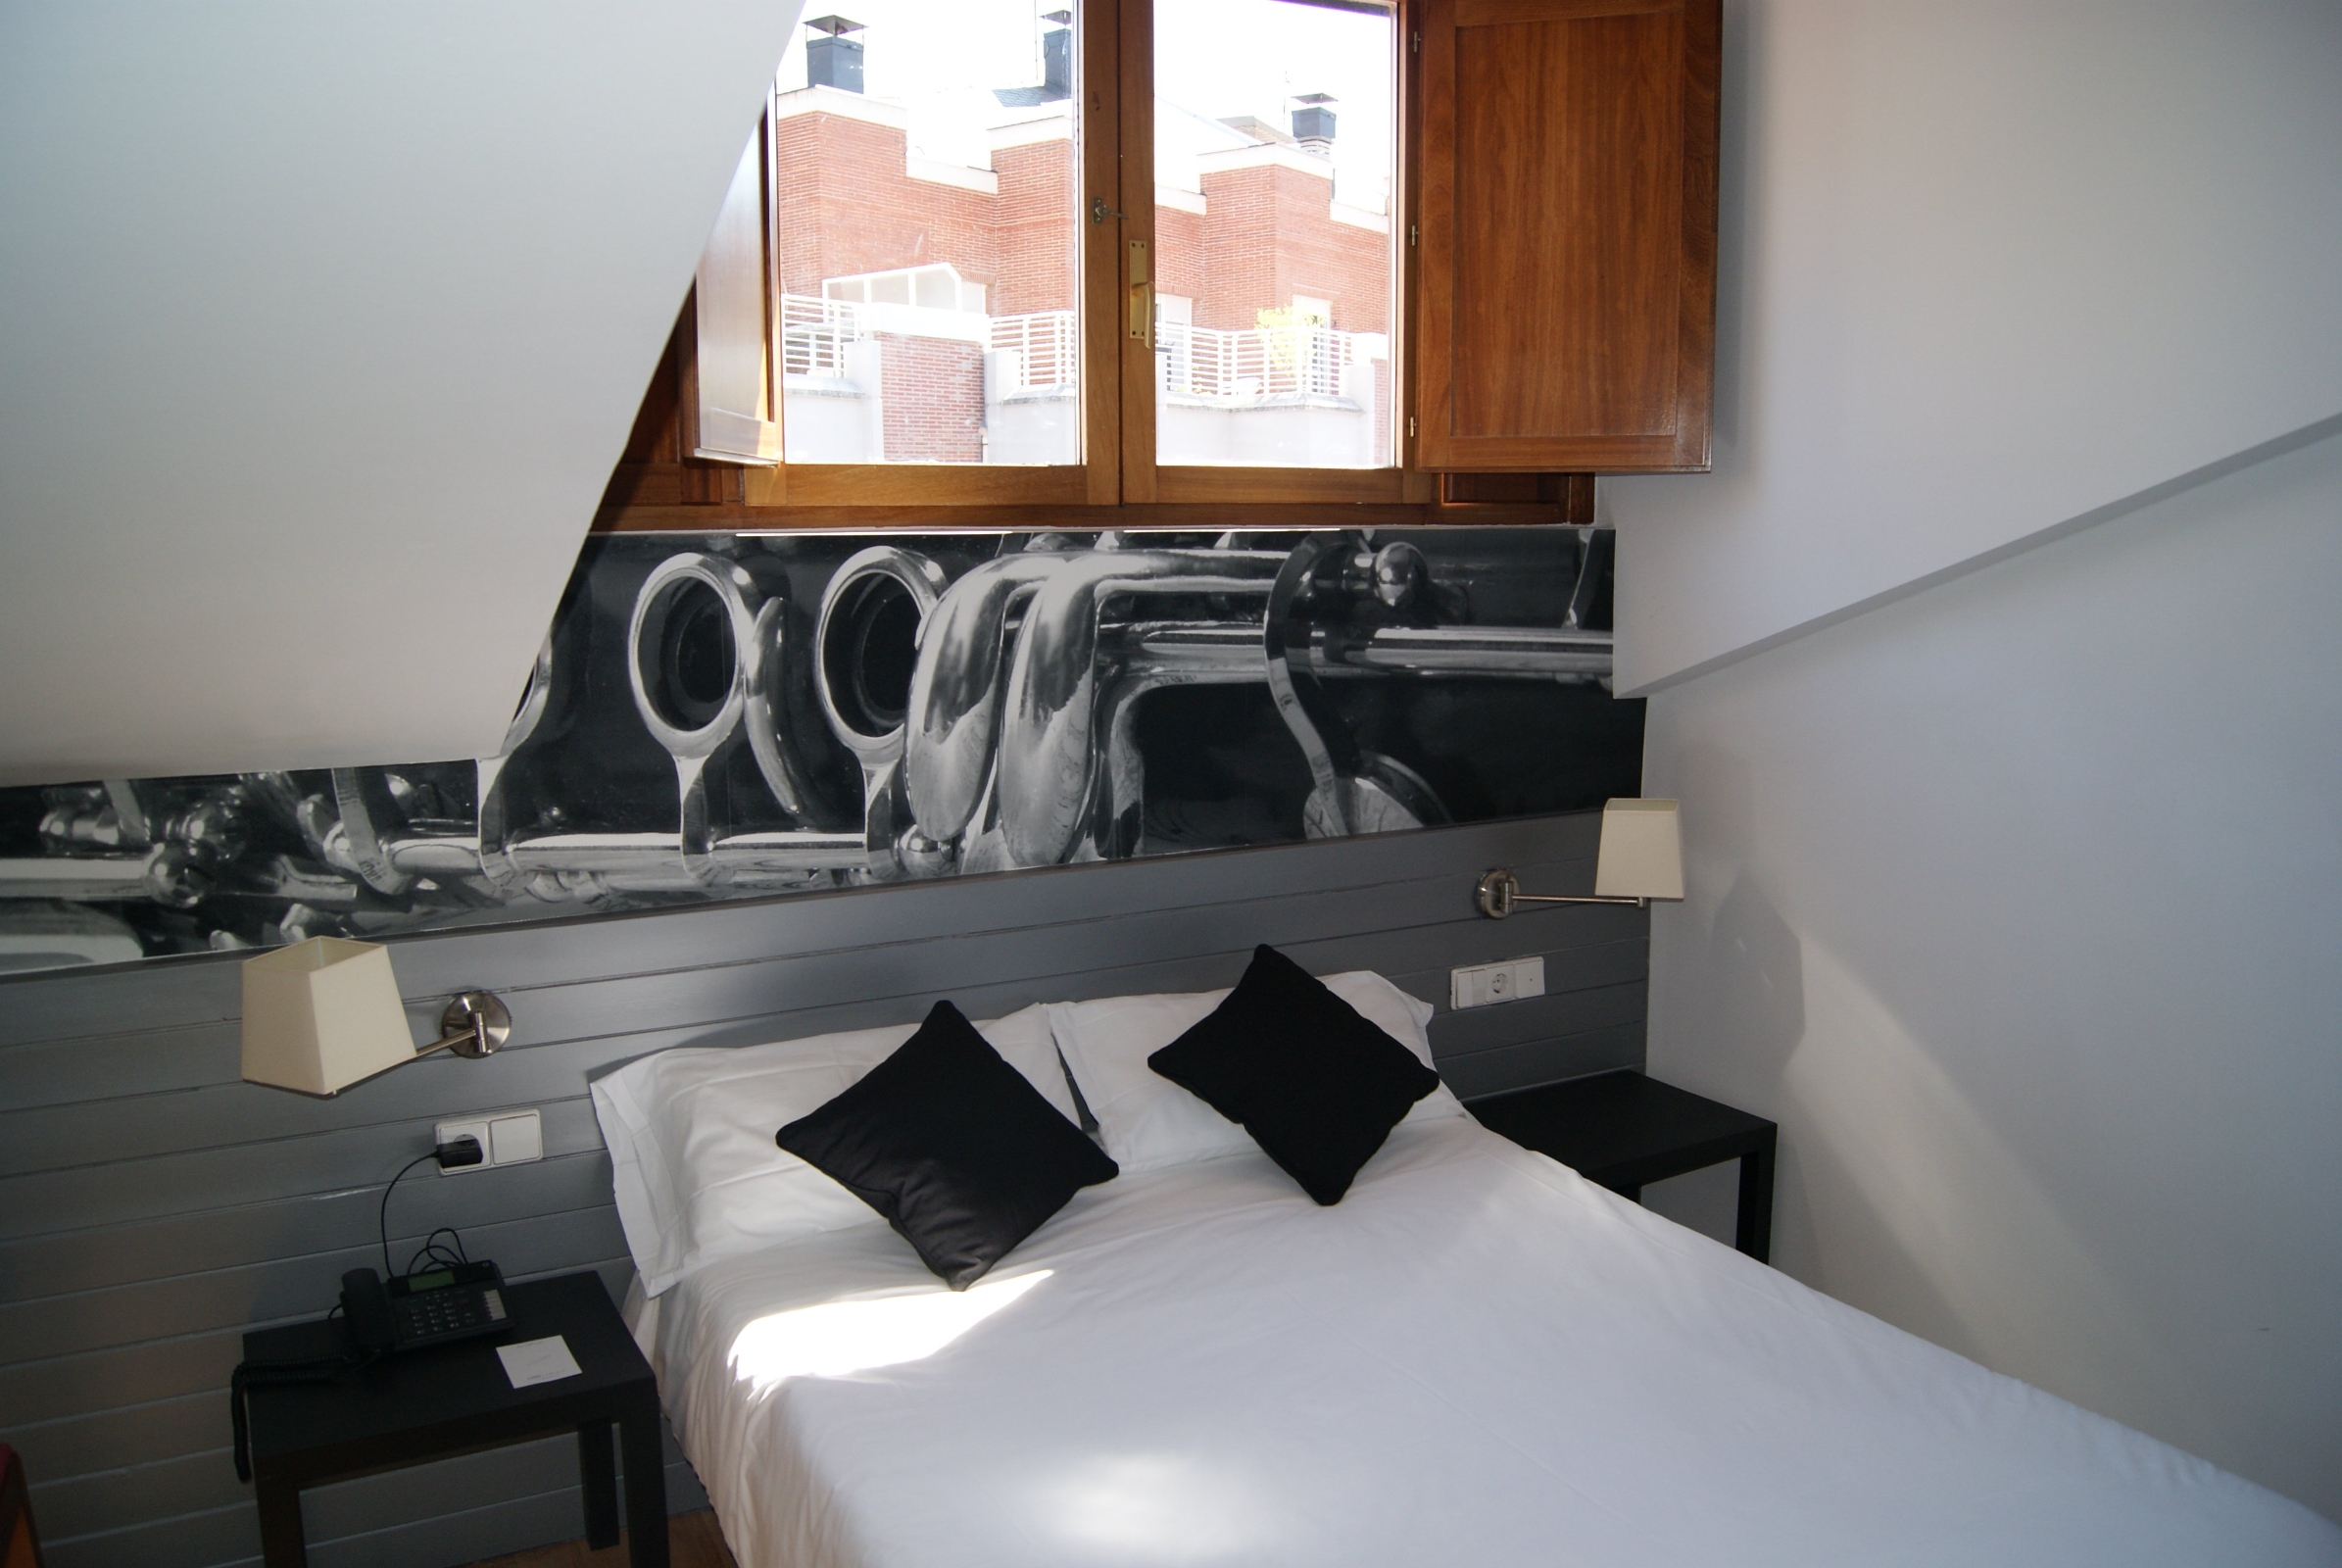 Abba Jazz Hotel - Vitoria-Gasteiz - Great prices at HOTEL INFO